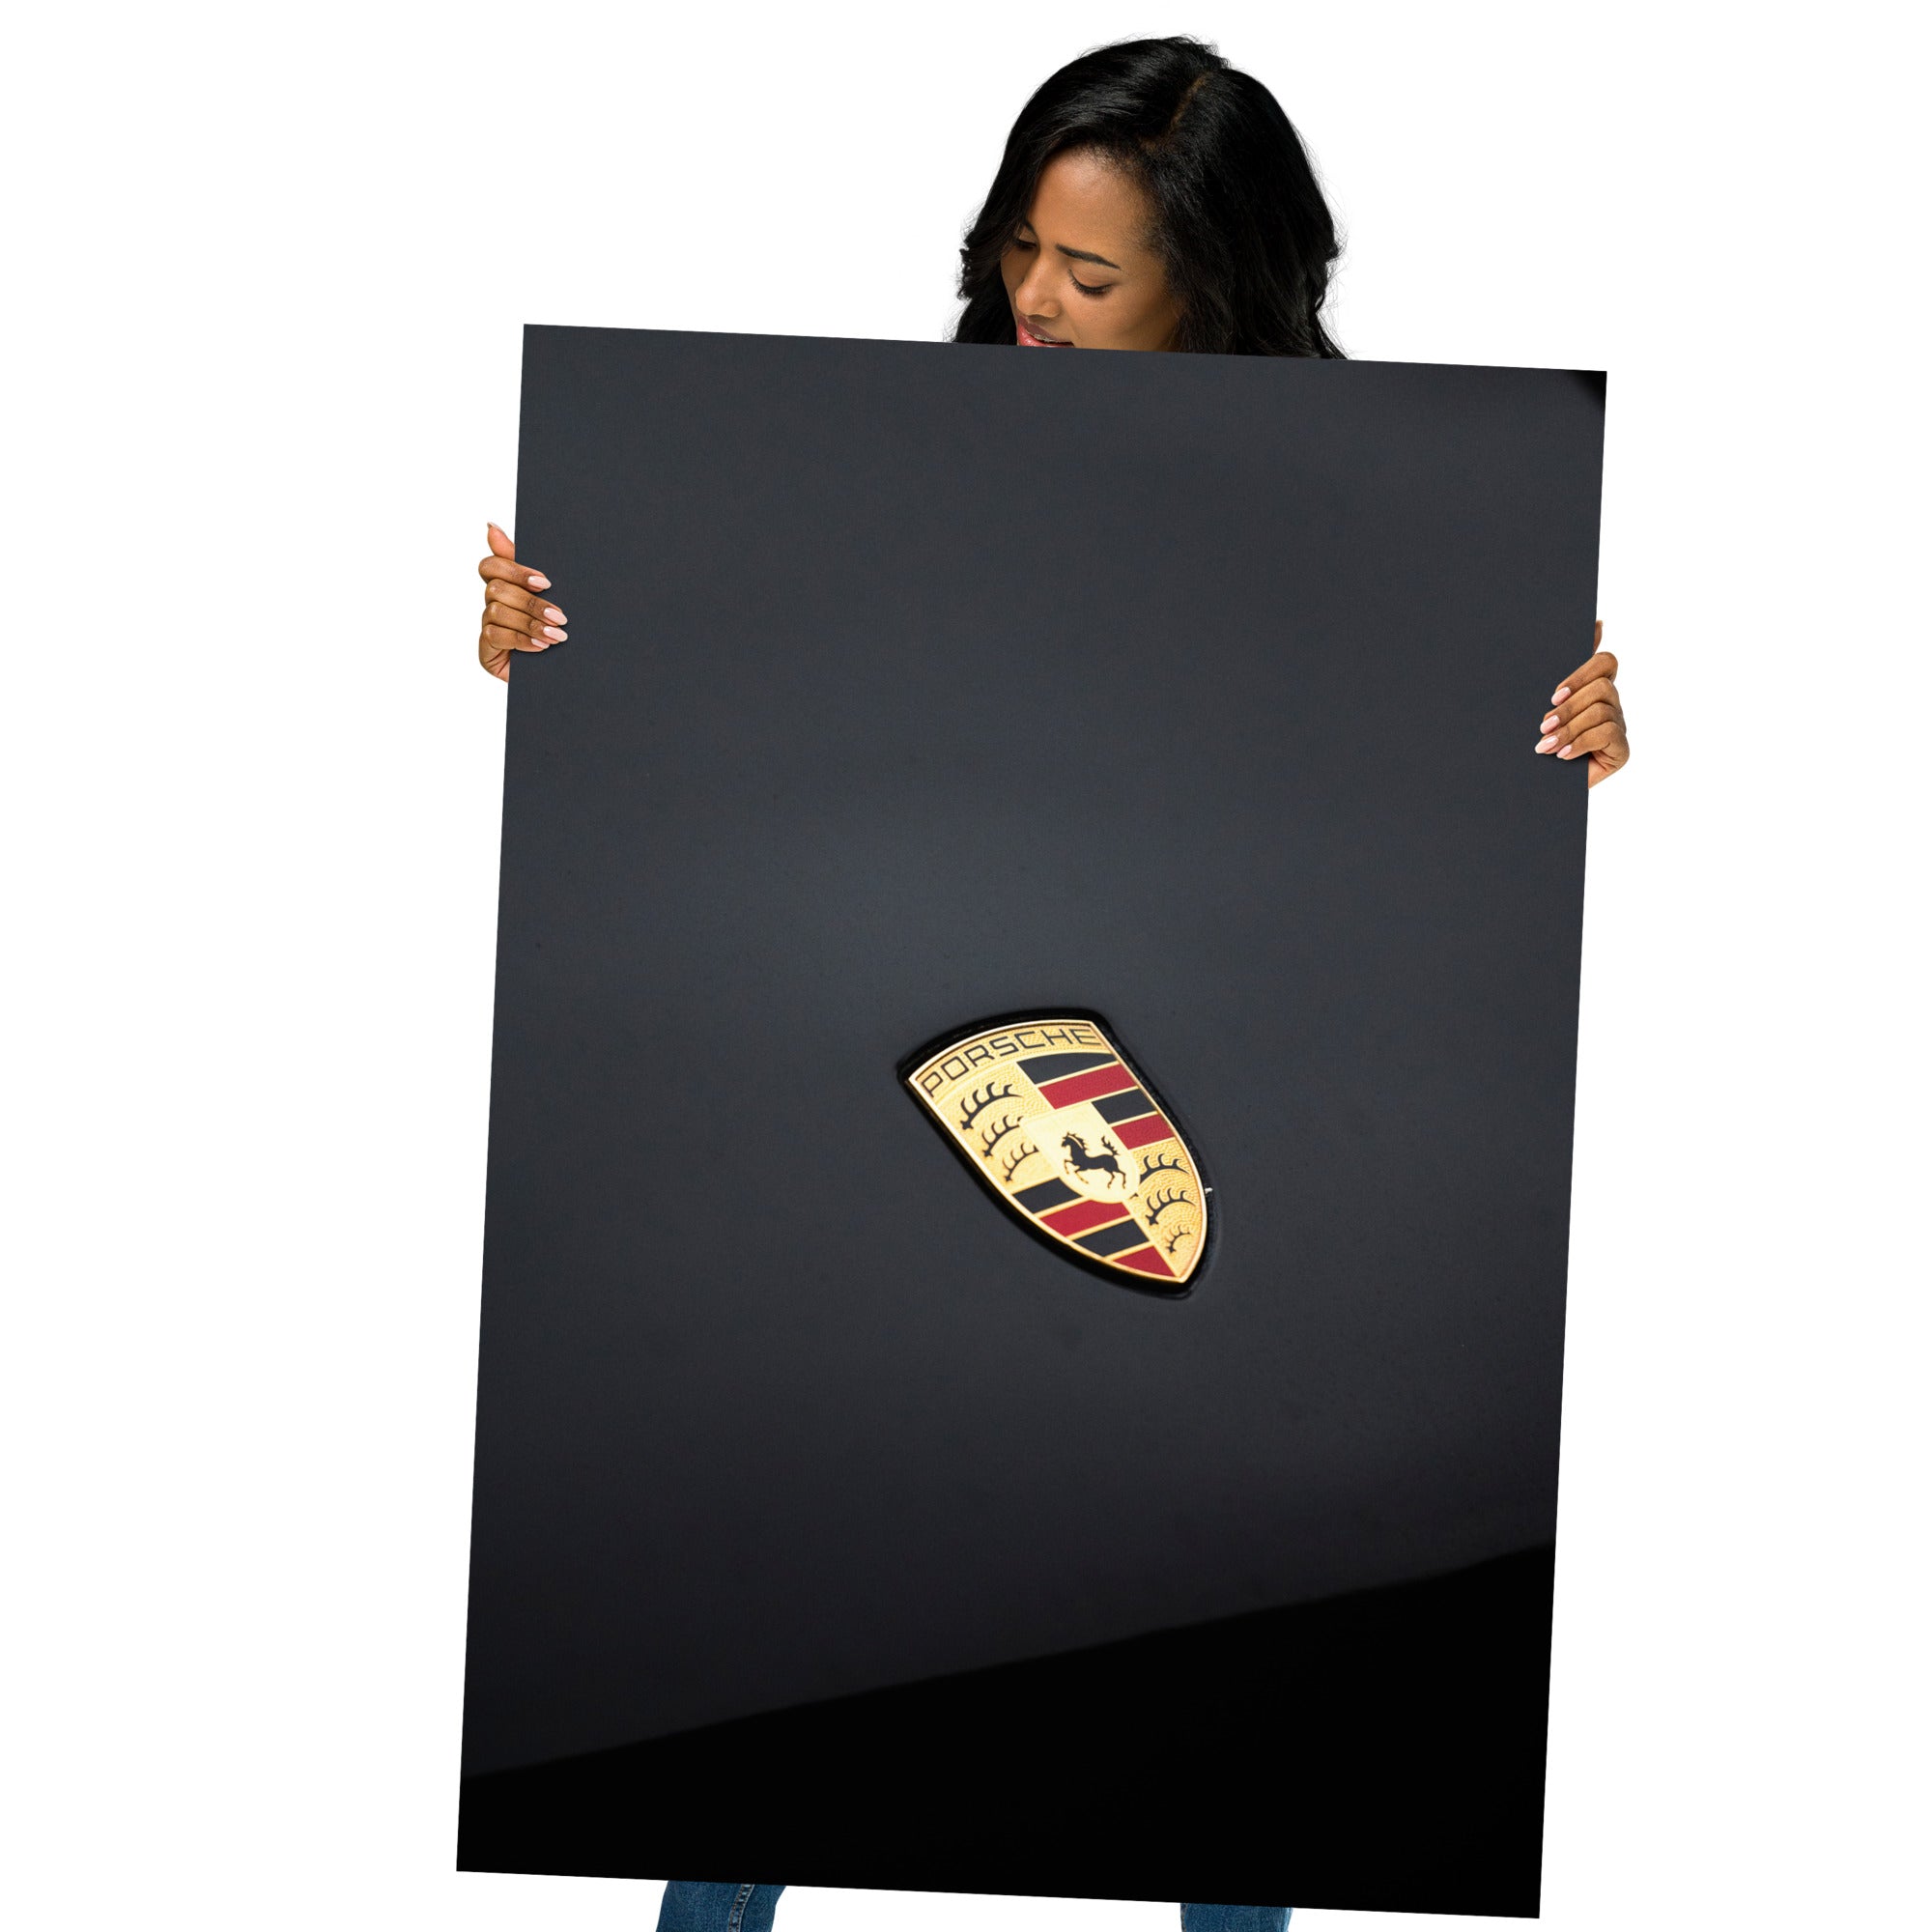 Logo brillant de Porsche sur un capot immaculé, symbolisant élégance et tradition.